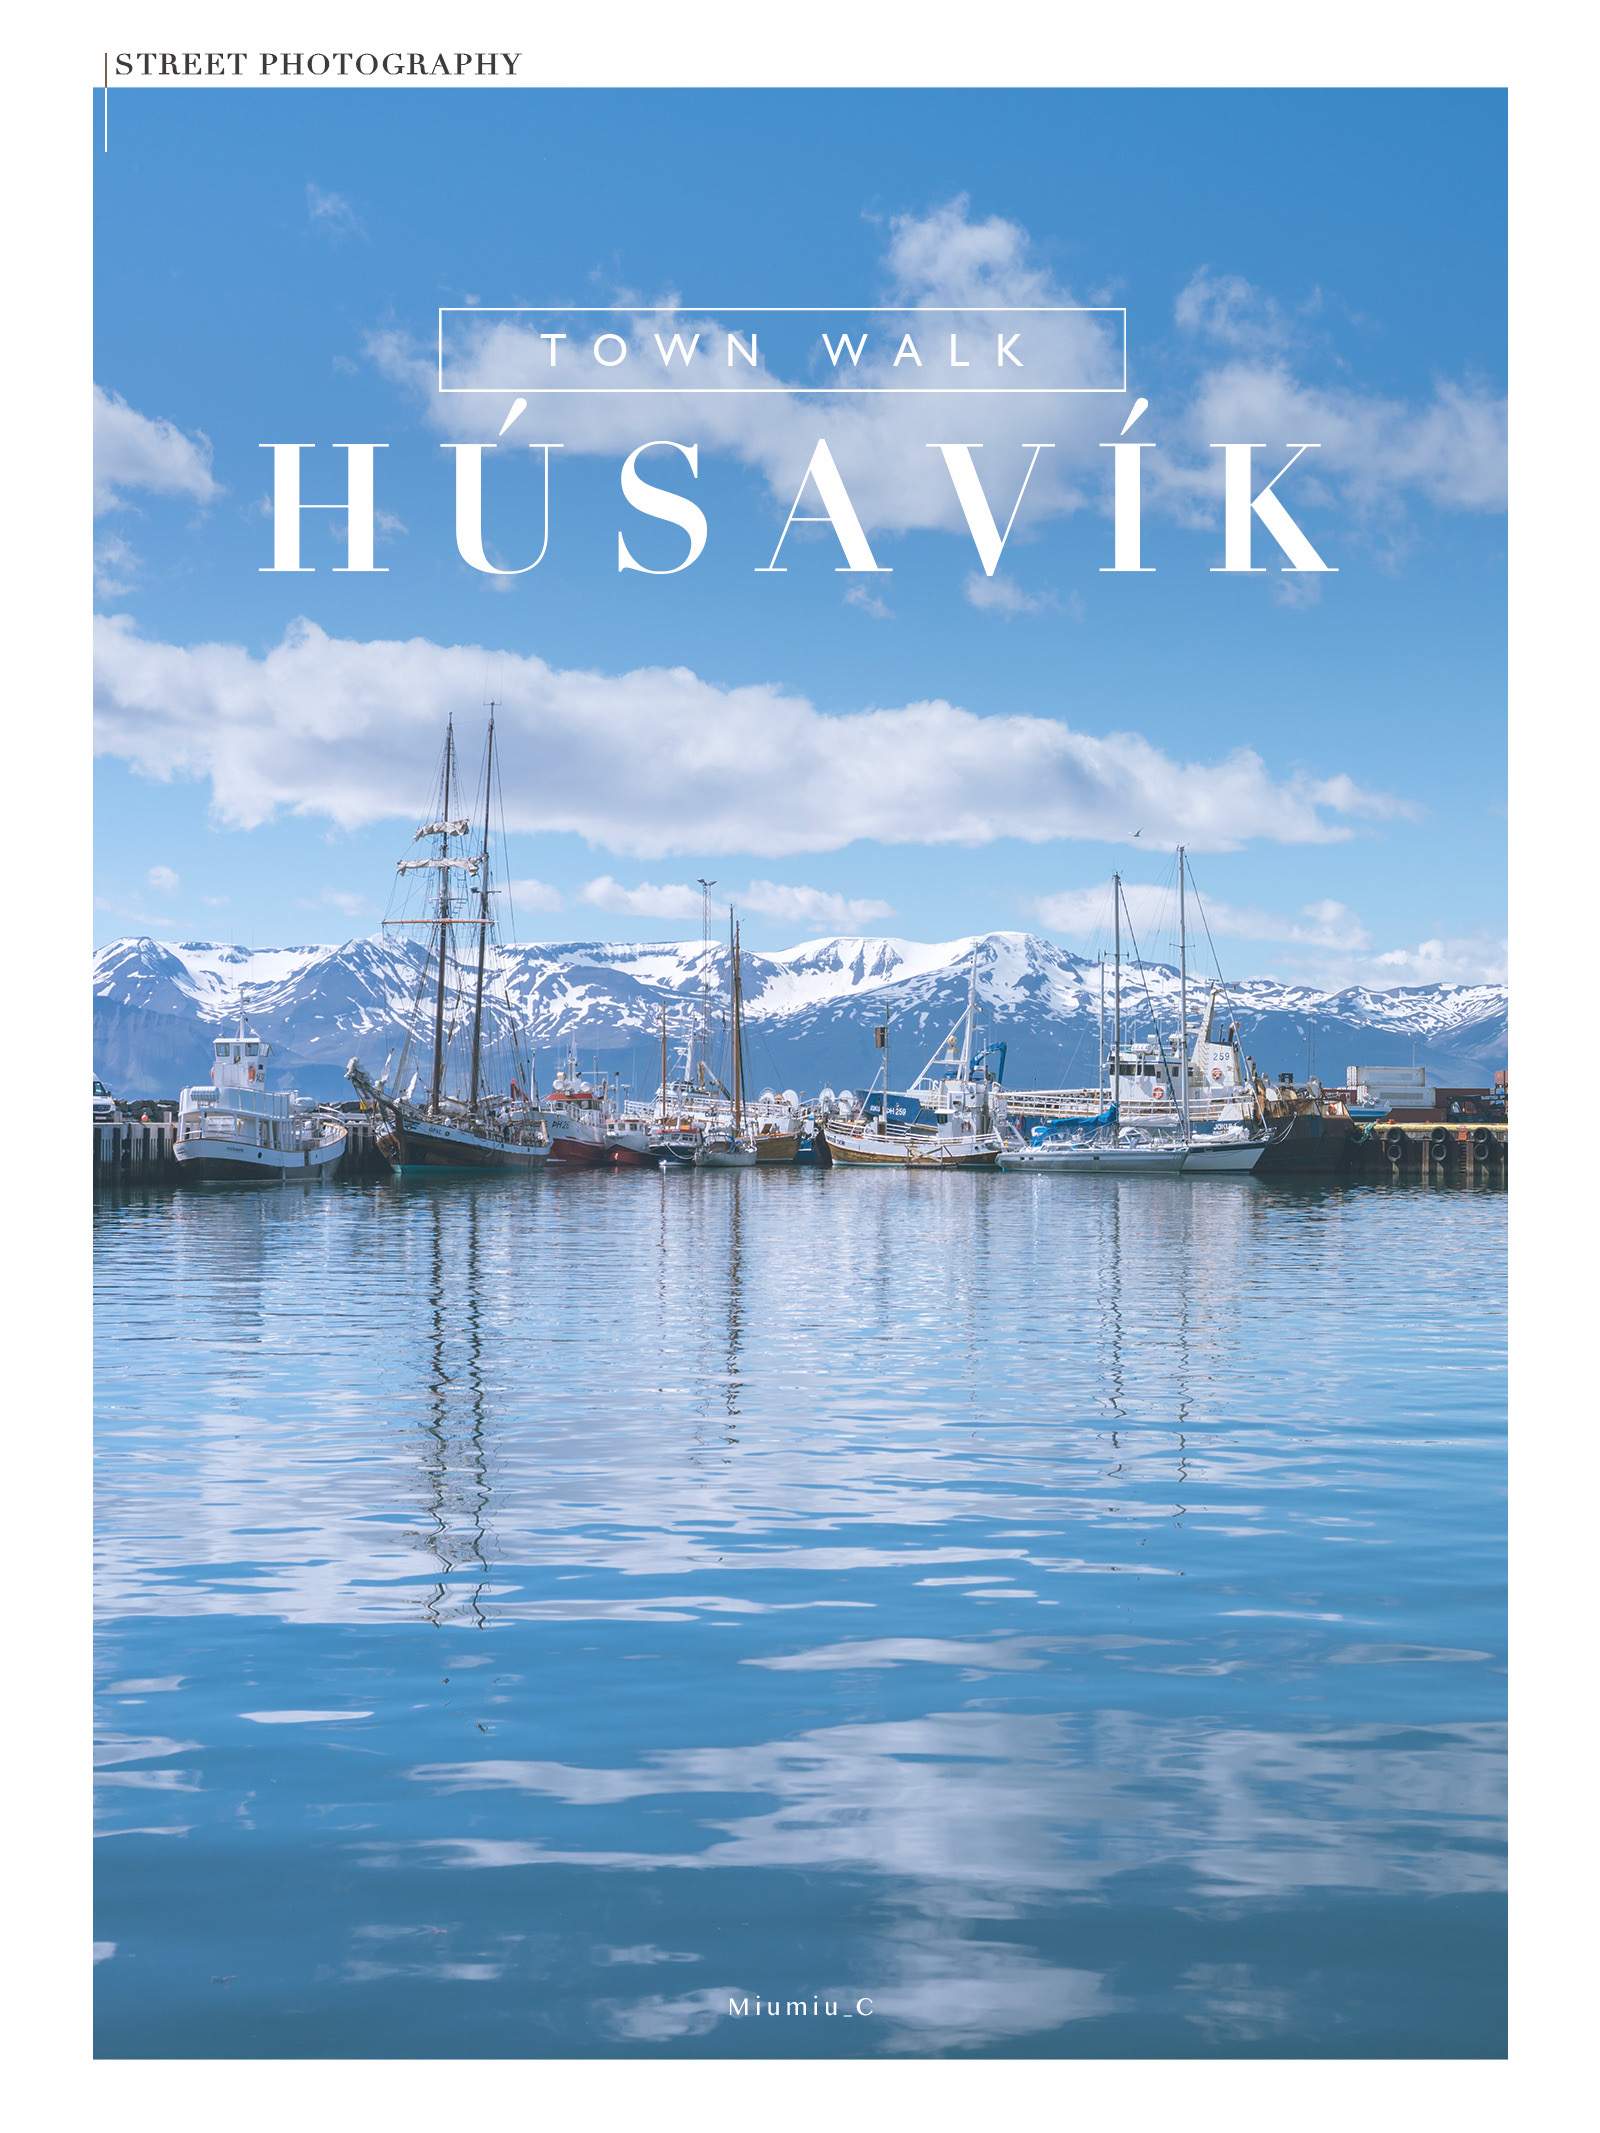 冰岛|北部观鲸小镇·胡萨维克